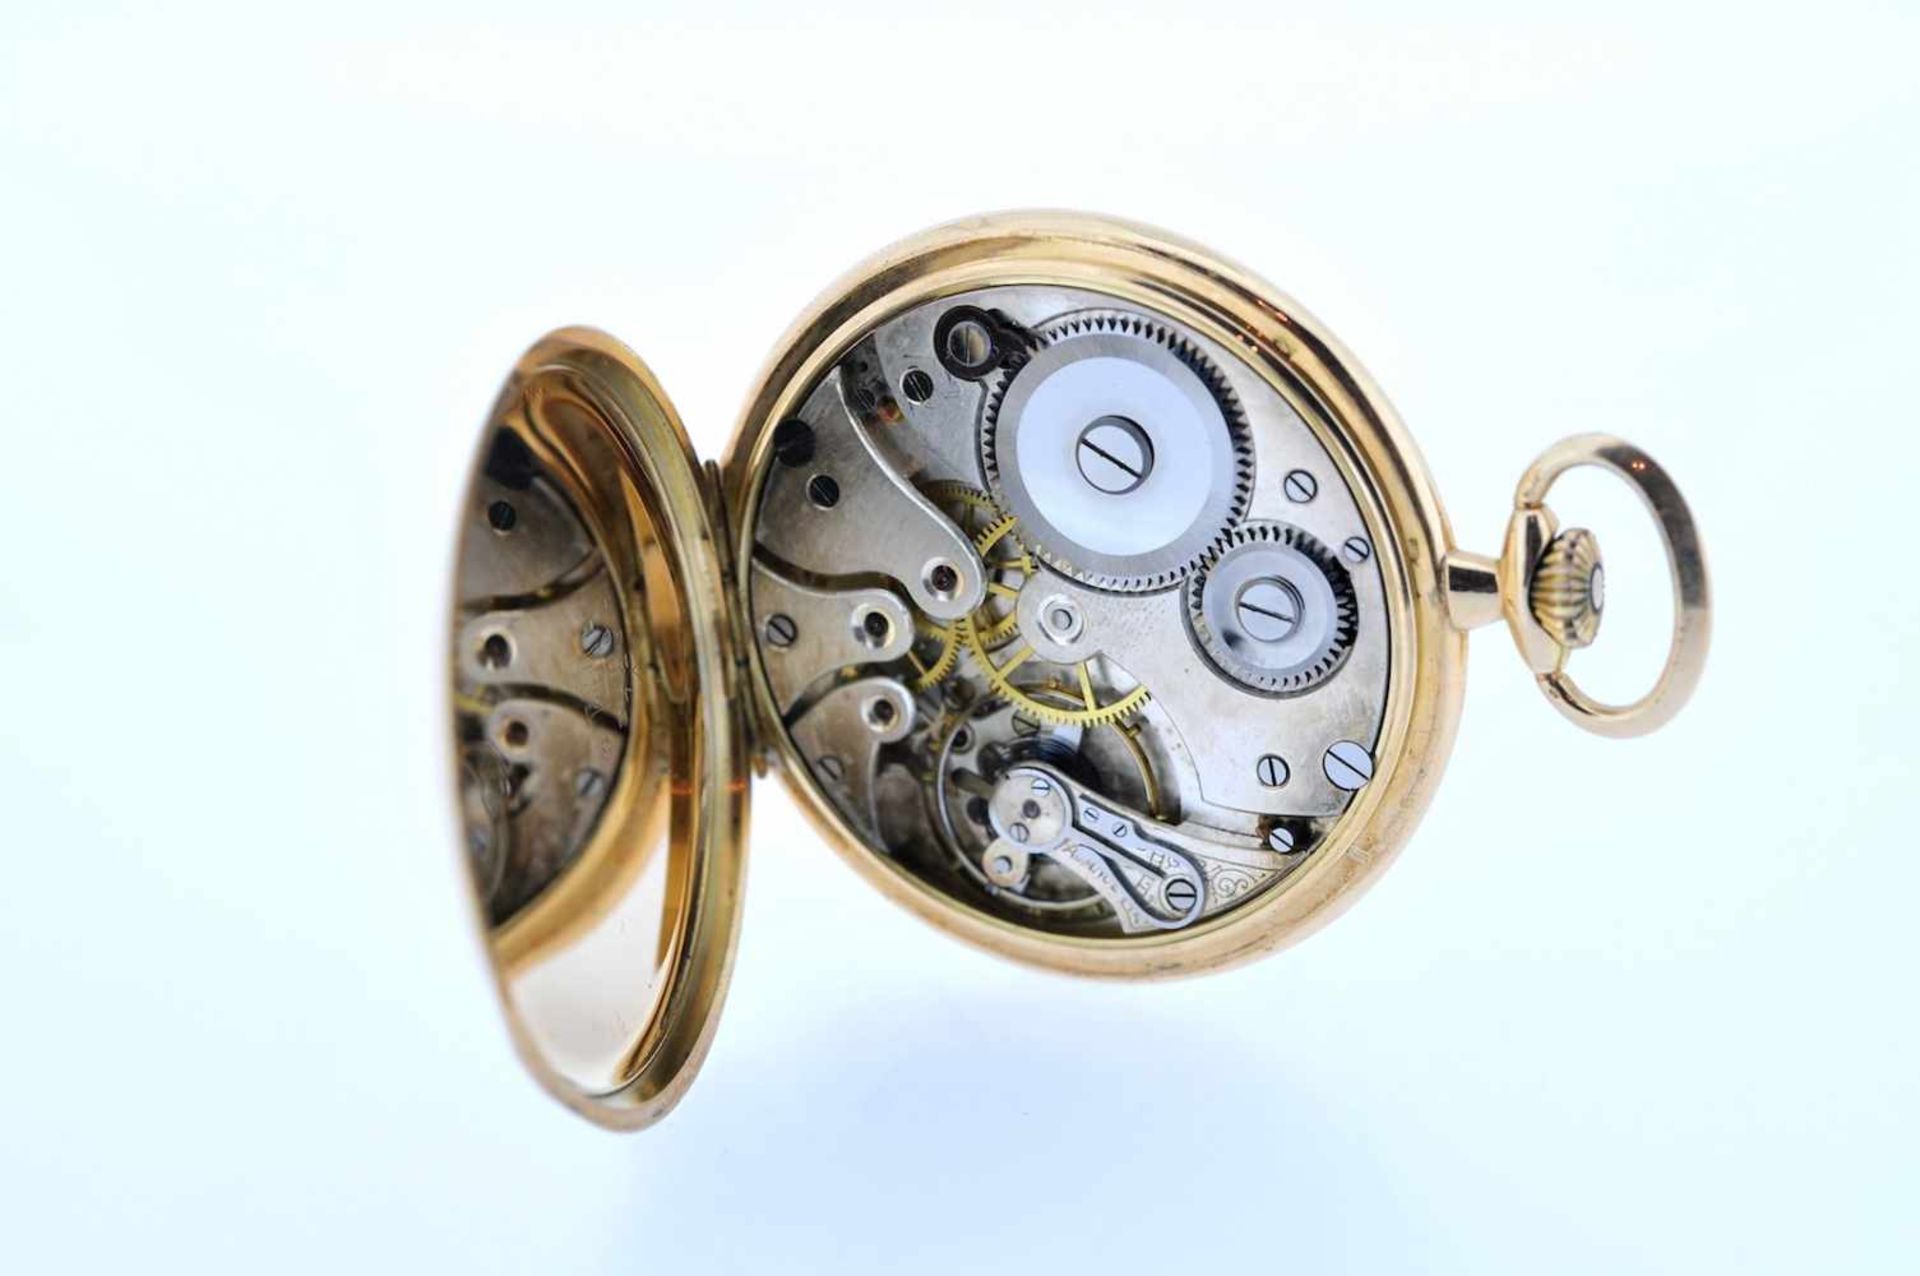 Goldene Frackuhr Goldene Frackuhr mit kleiner Sekunde, Chronometer, Corgemont Watch, Breguetspirale, - Bild 2 aus 2